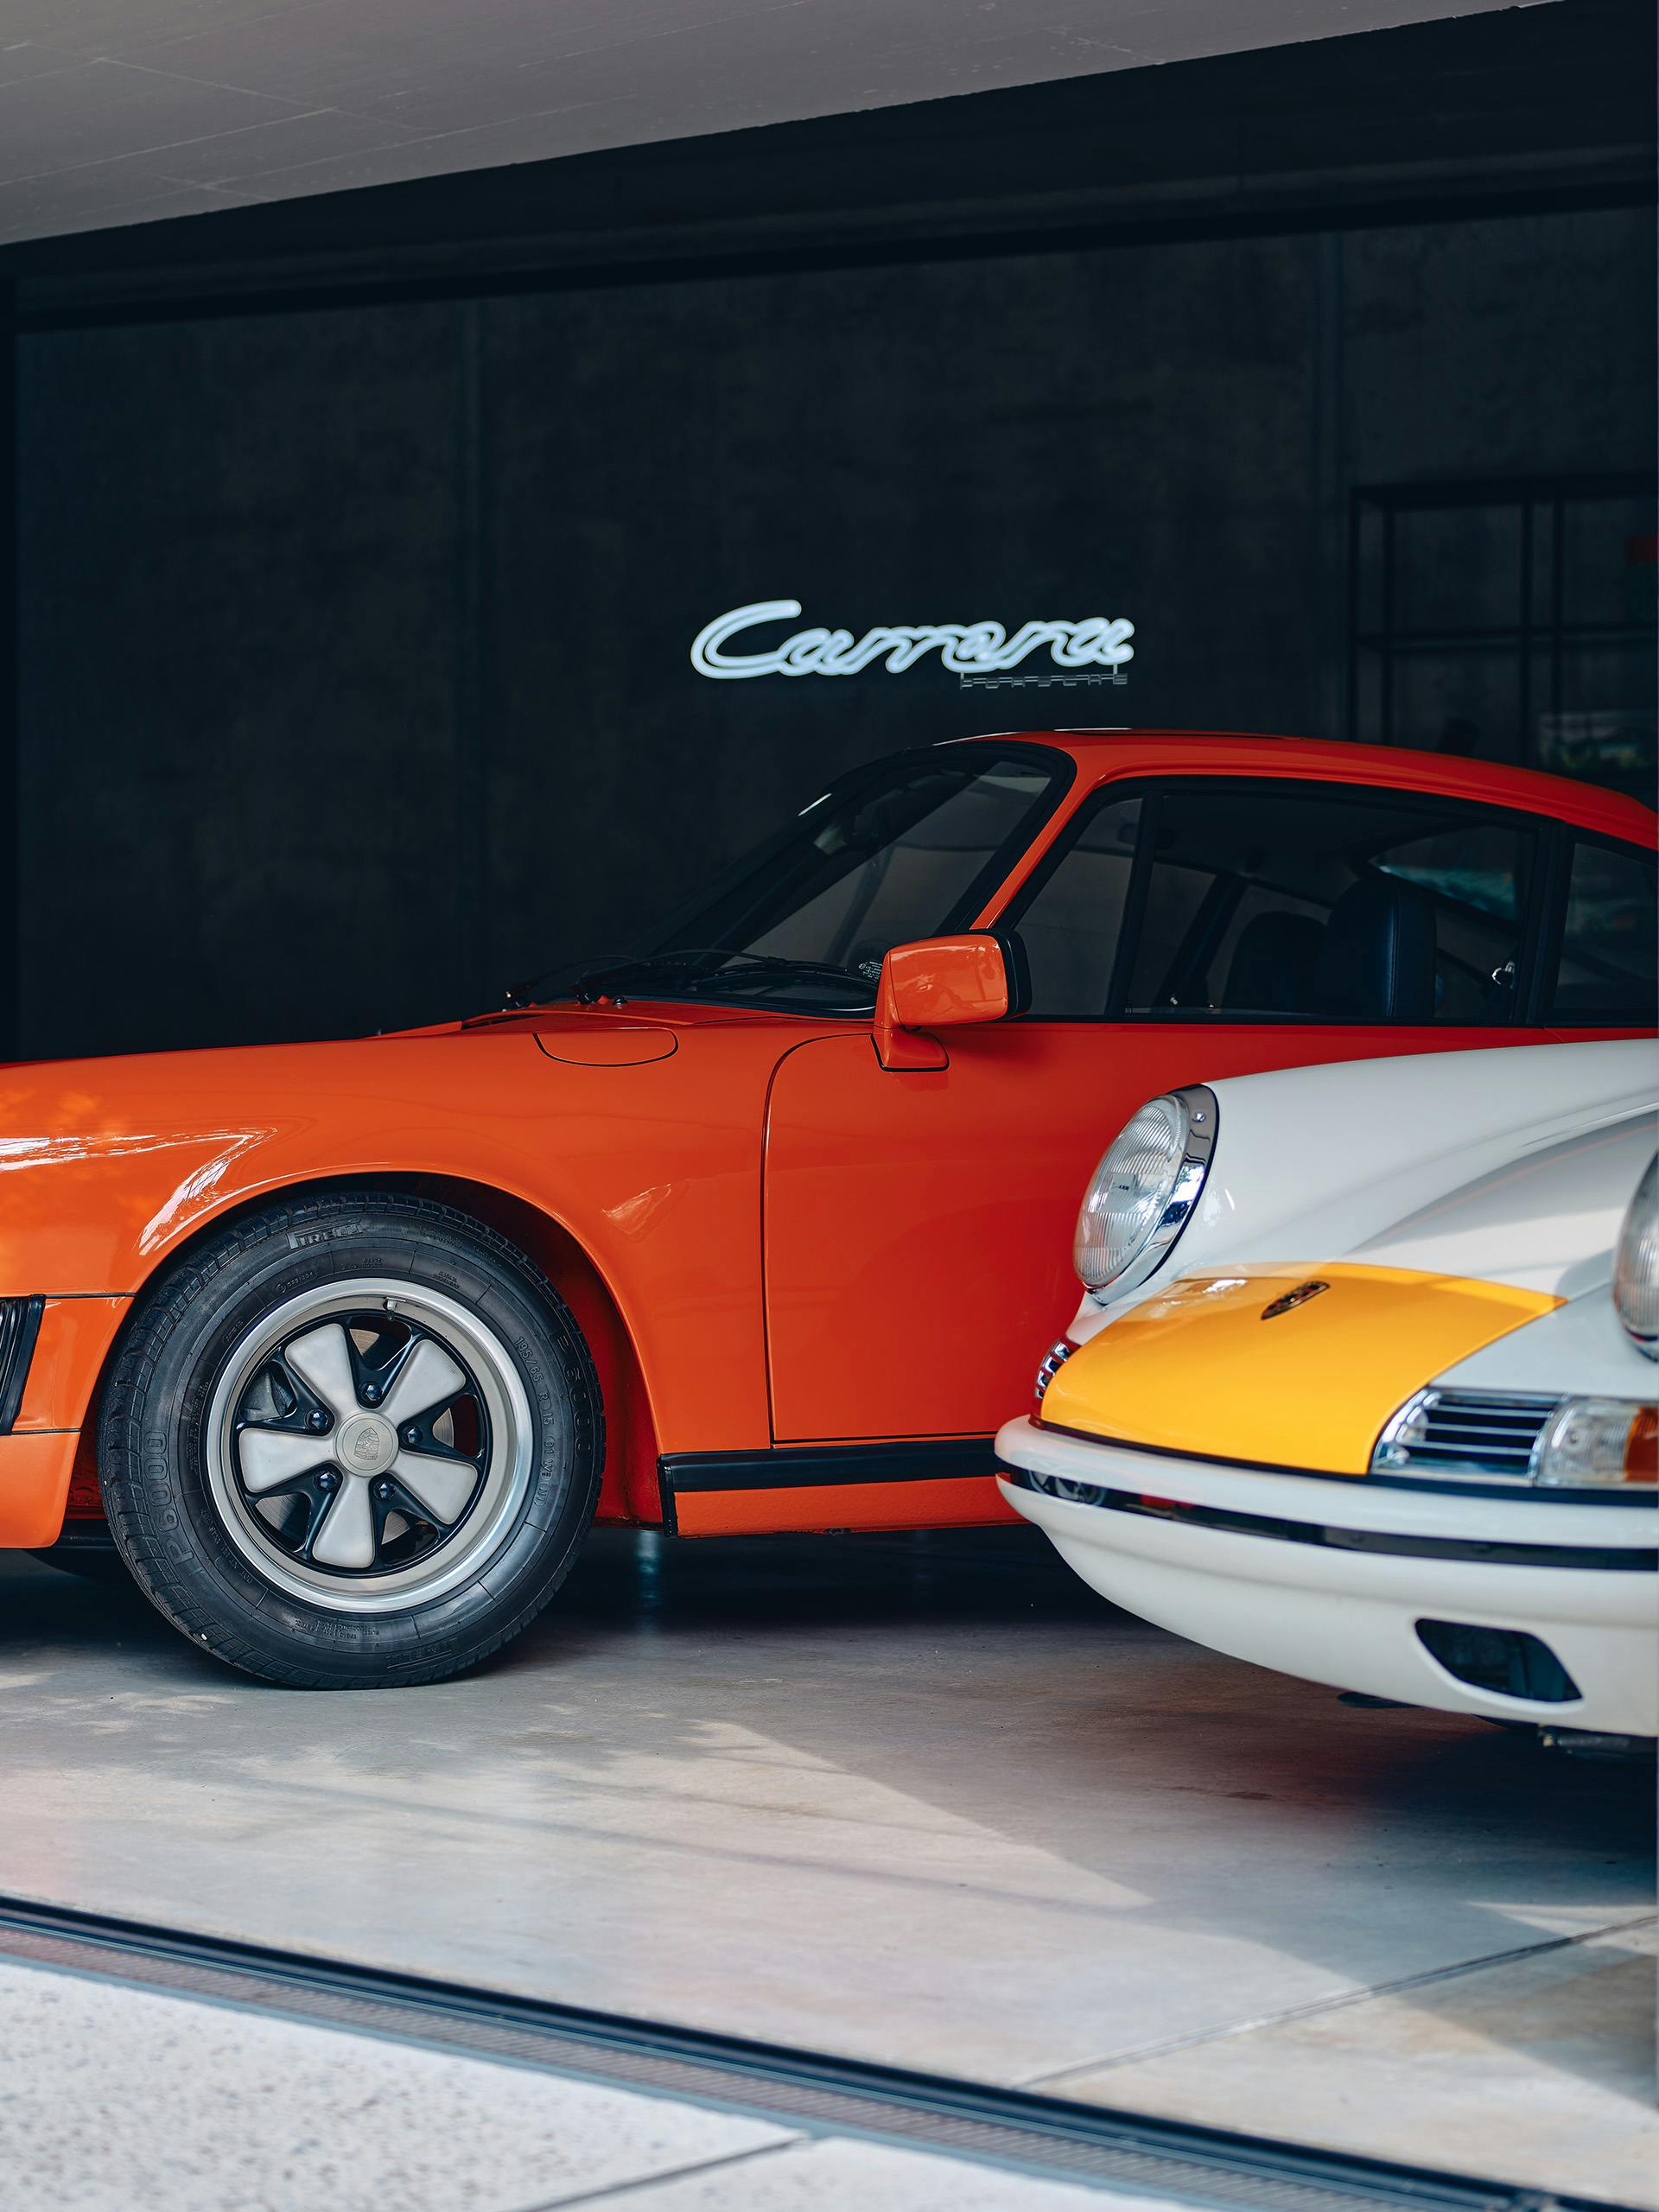 Porsche Classic Reifenschoner Set